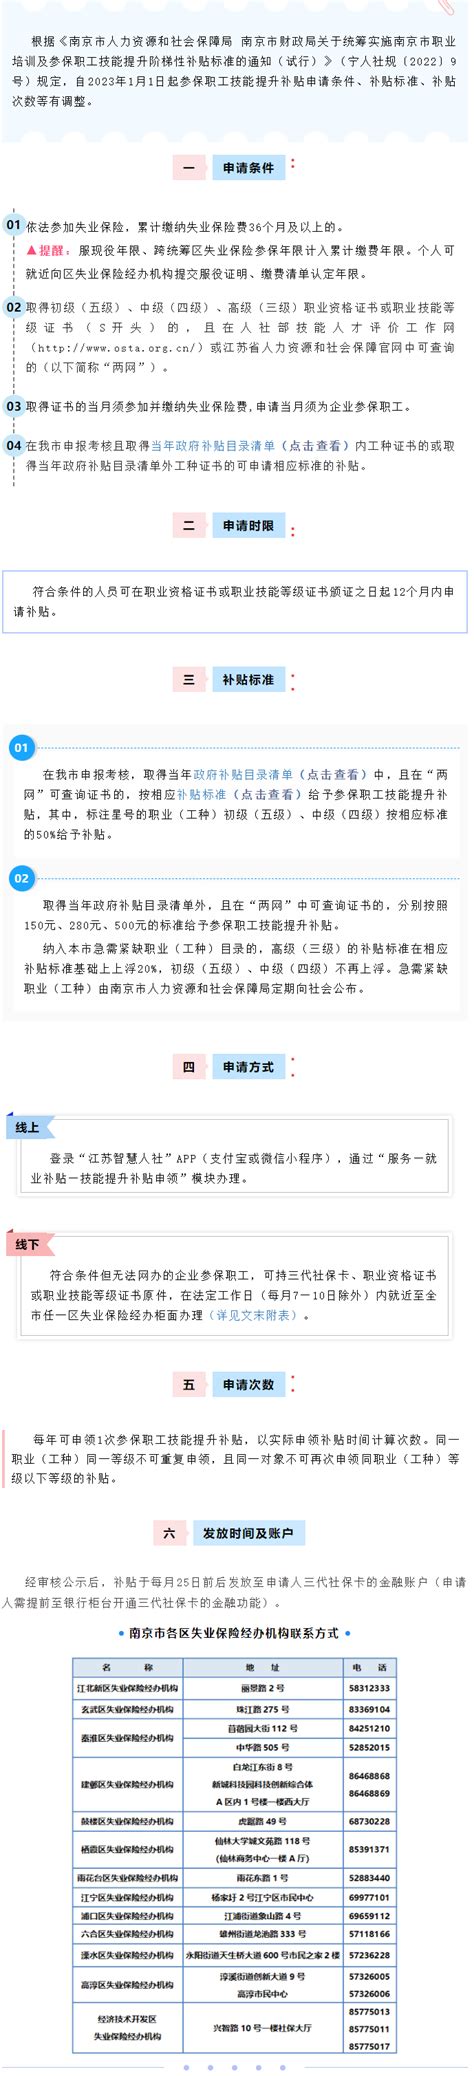 湖北省新版技能提升补贴申请流程 - 知乎